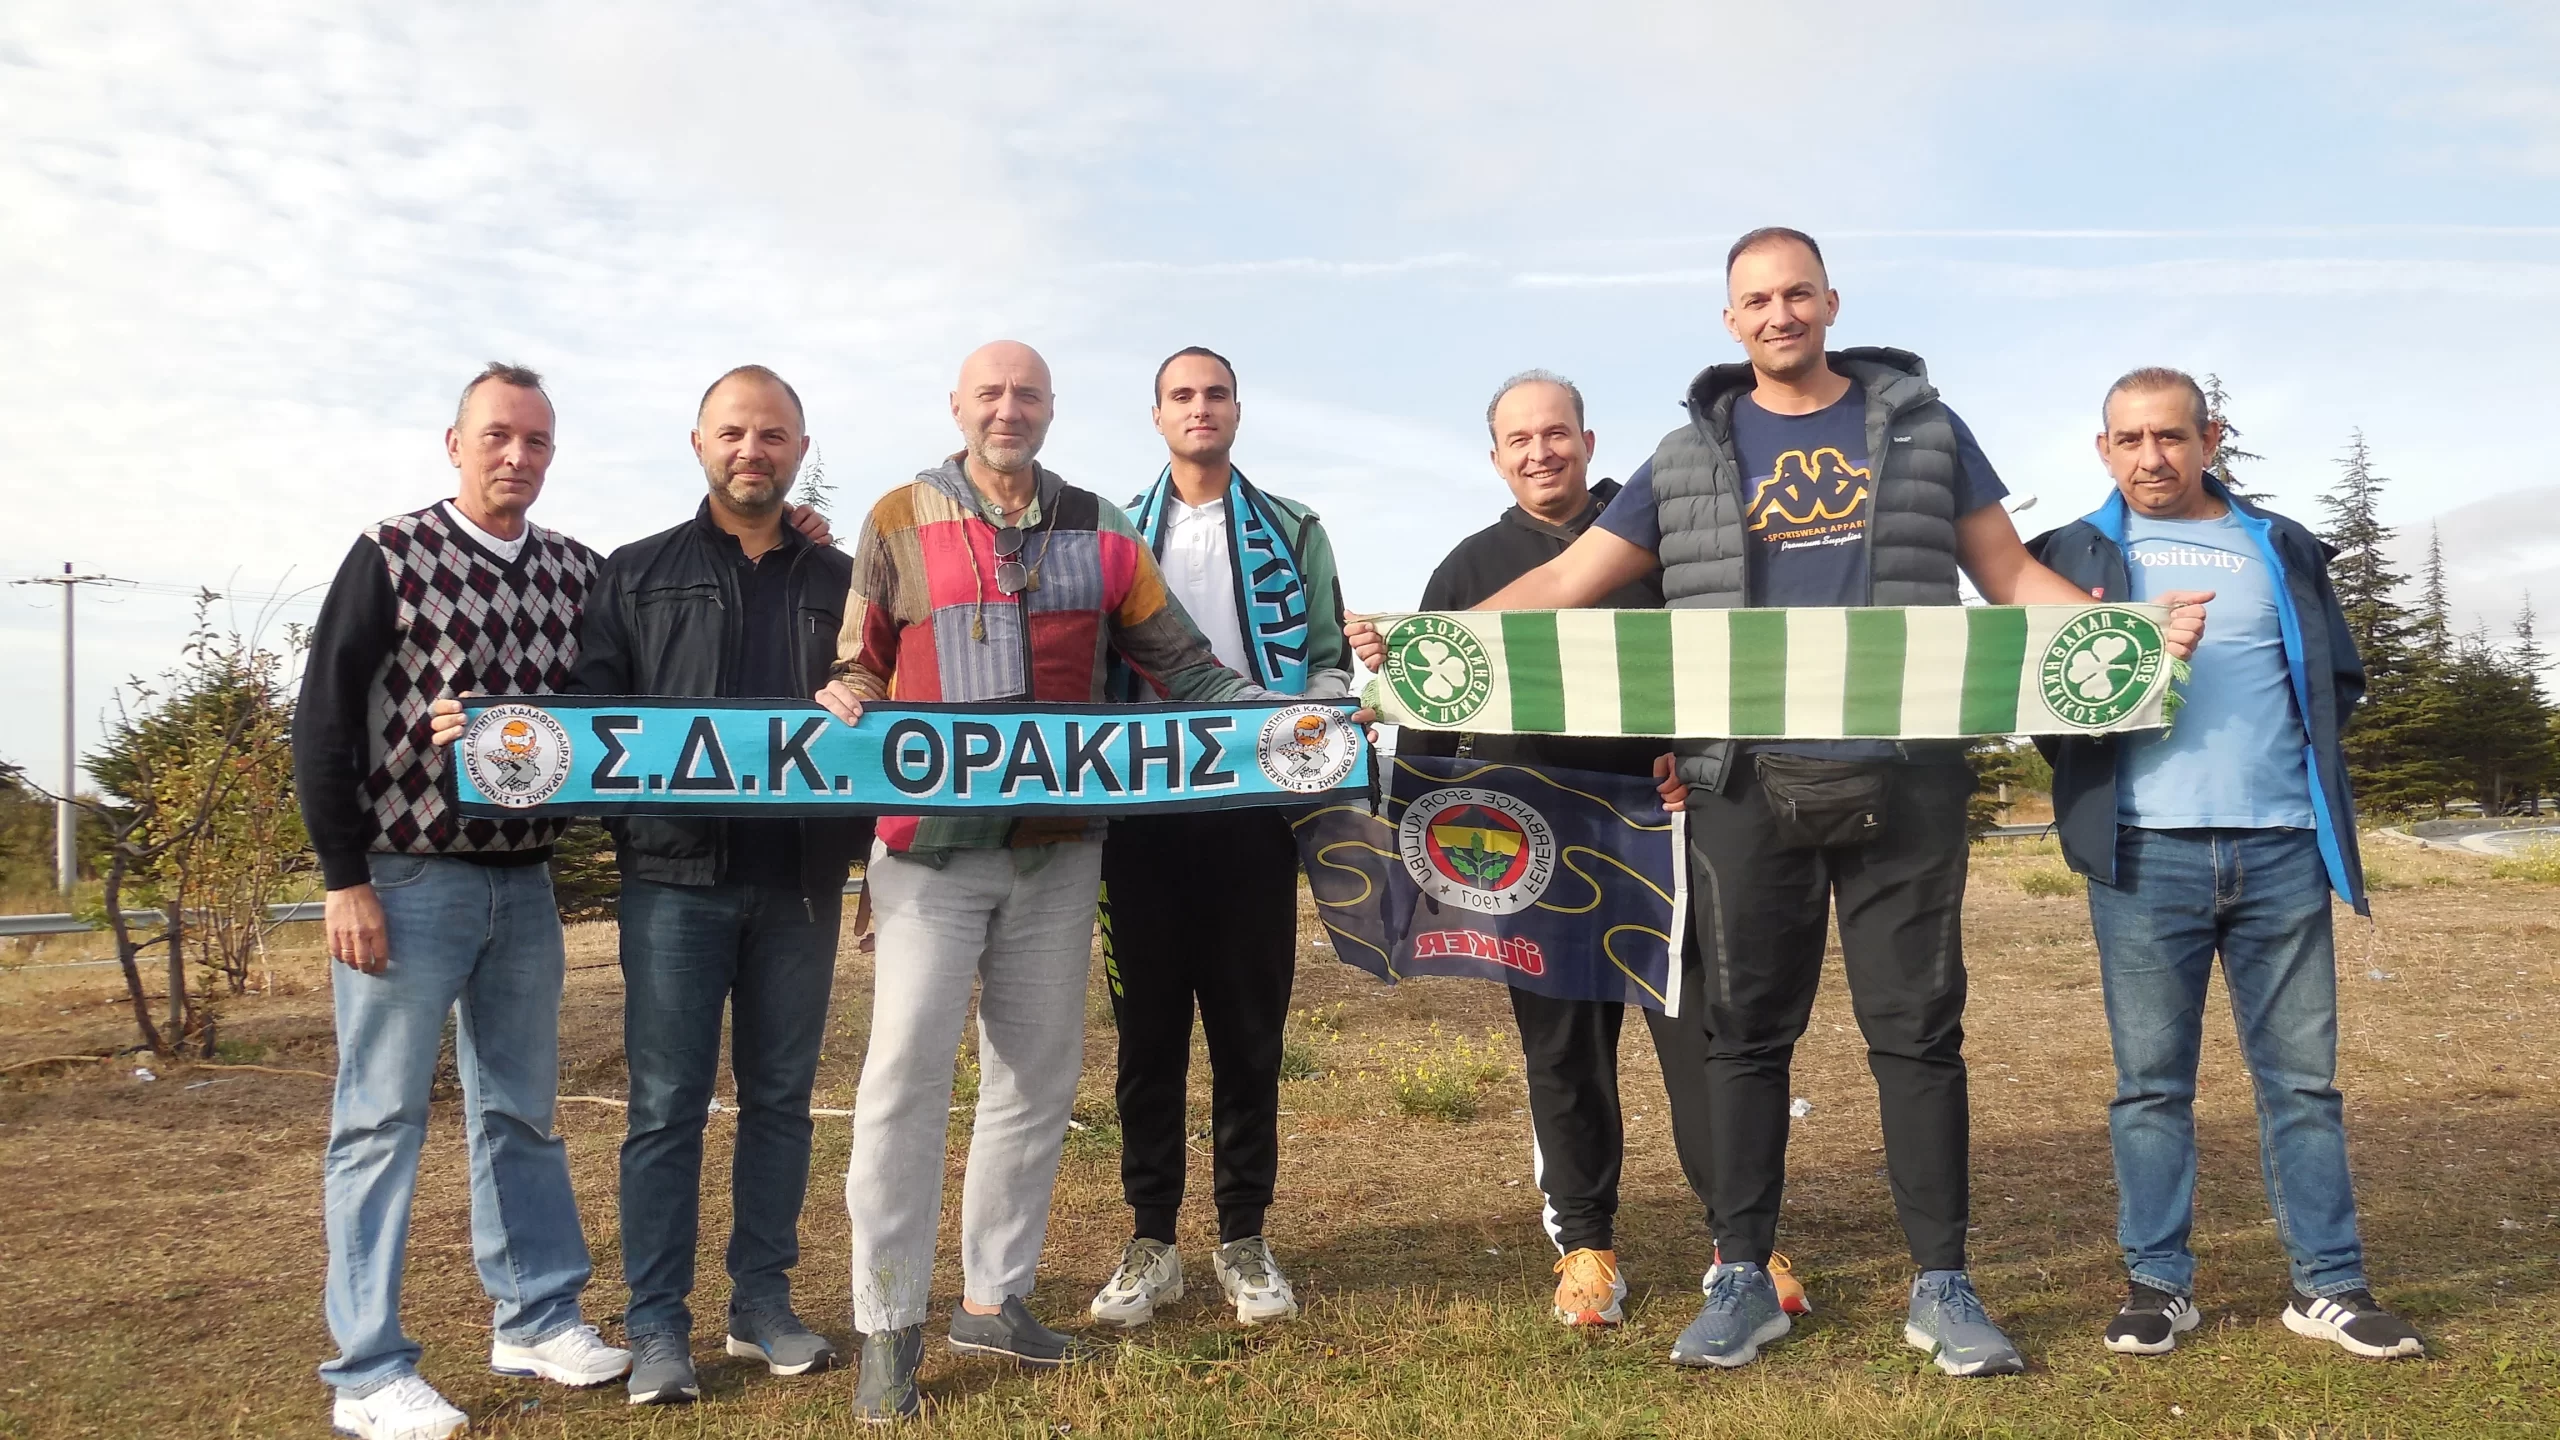 Μέλη του ΣΔΚ Θράκης παρακολούθησαν αγώνες ελληνικών ομάδων στην Κωνσταντινούπολη